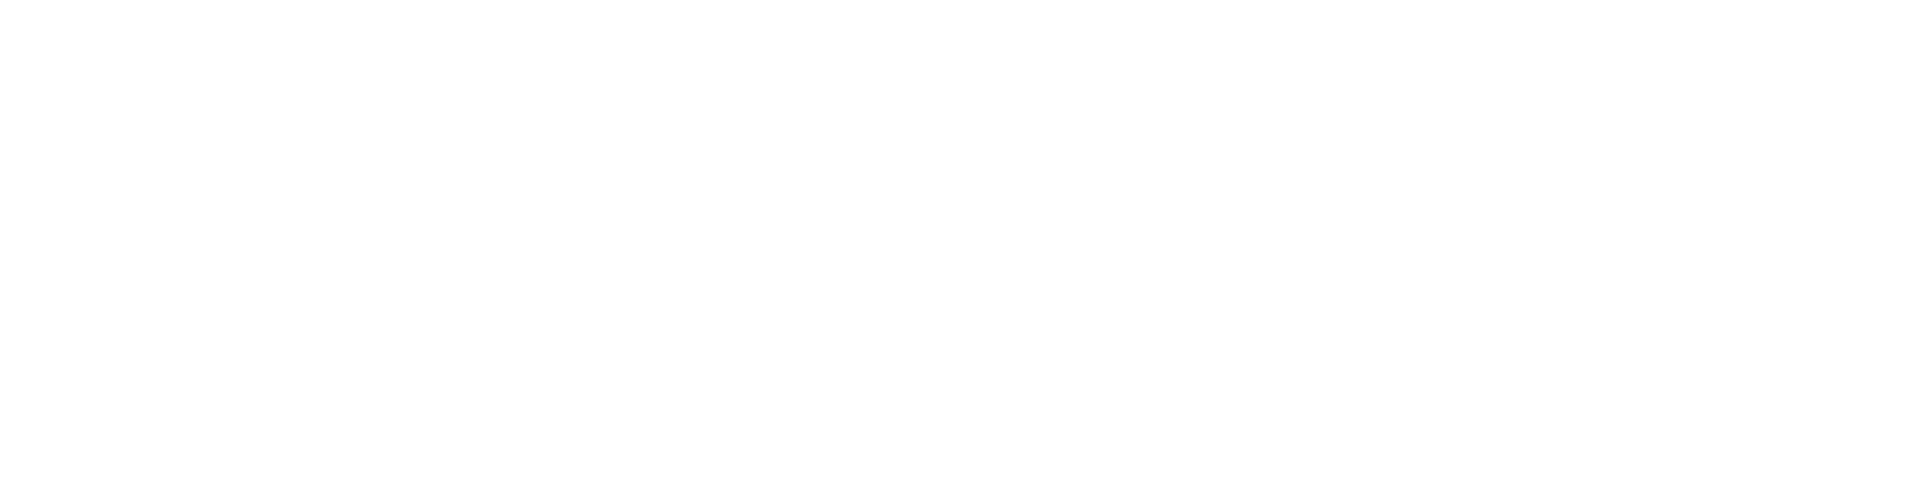 Håndtegnet illustration af en person der ligger ned